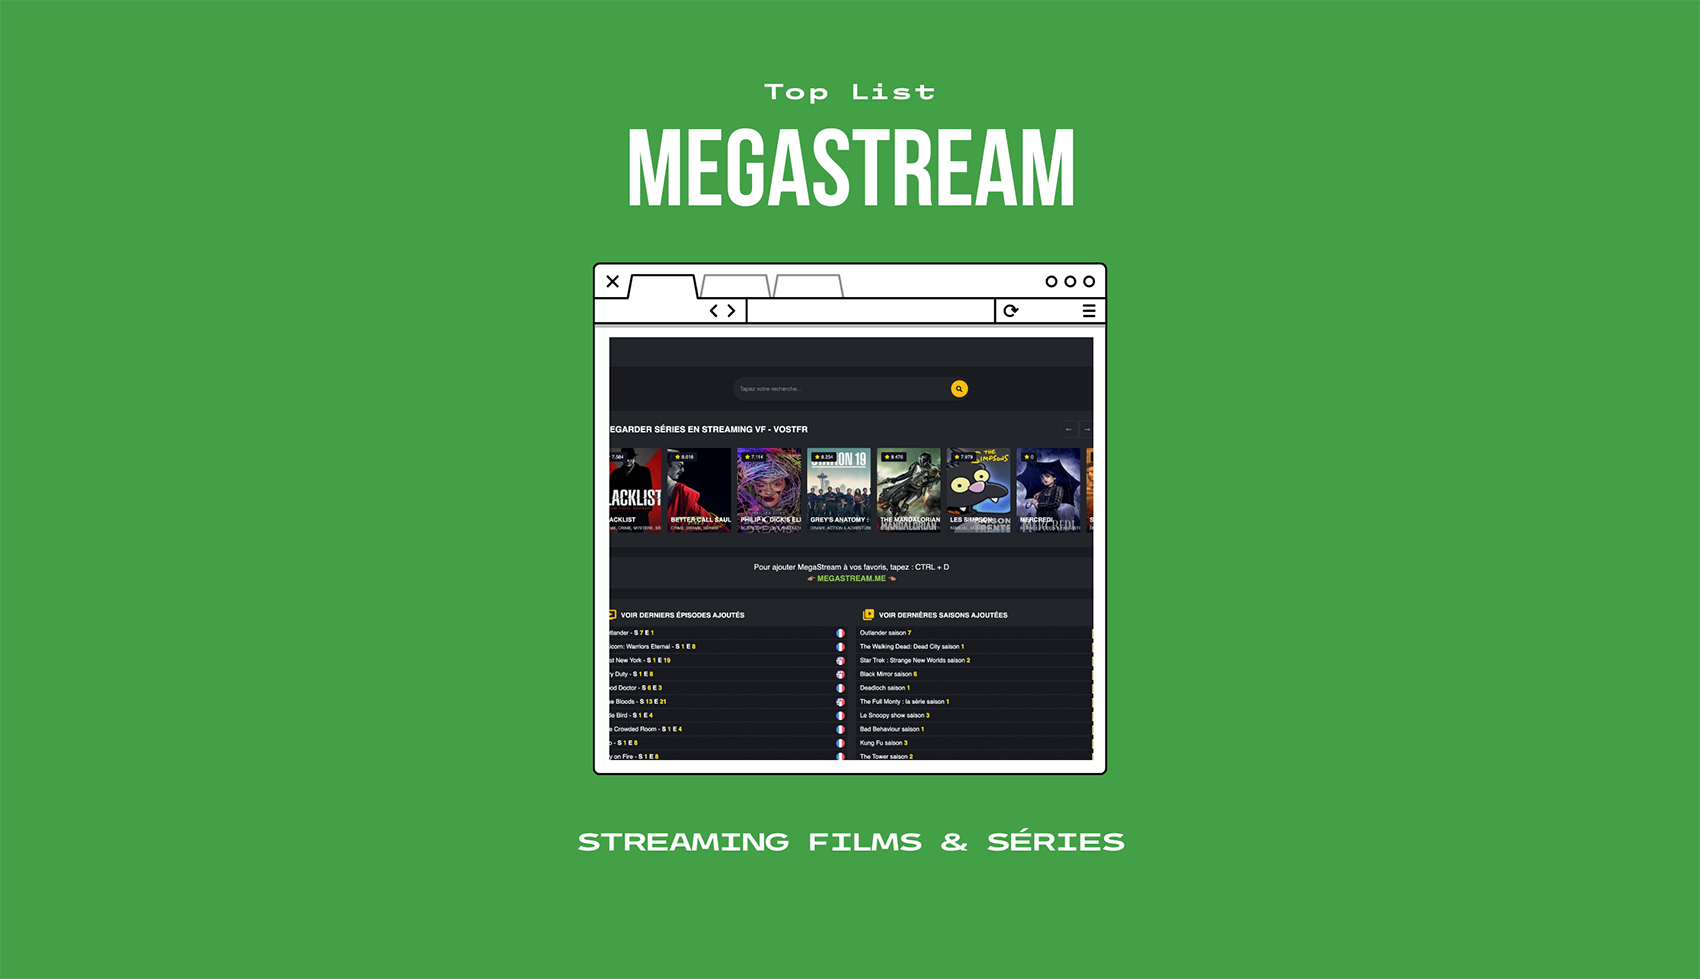 MegaStream: ເວັບໄຊສາຍຮູບເງົາ ແລະຊີຣີແບບບໍ່ຈຳກັດໃໝ່ (ທີ່ຢູ່ ແລະທາງເລືອກ)